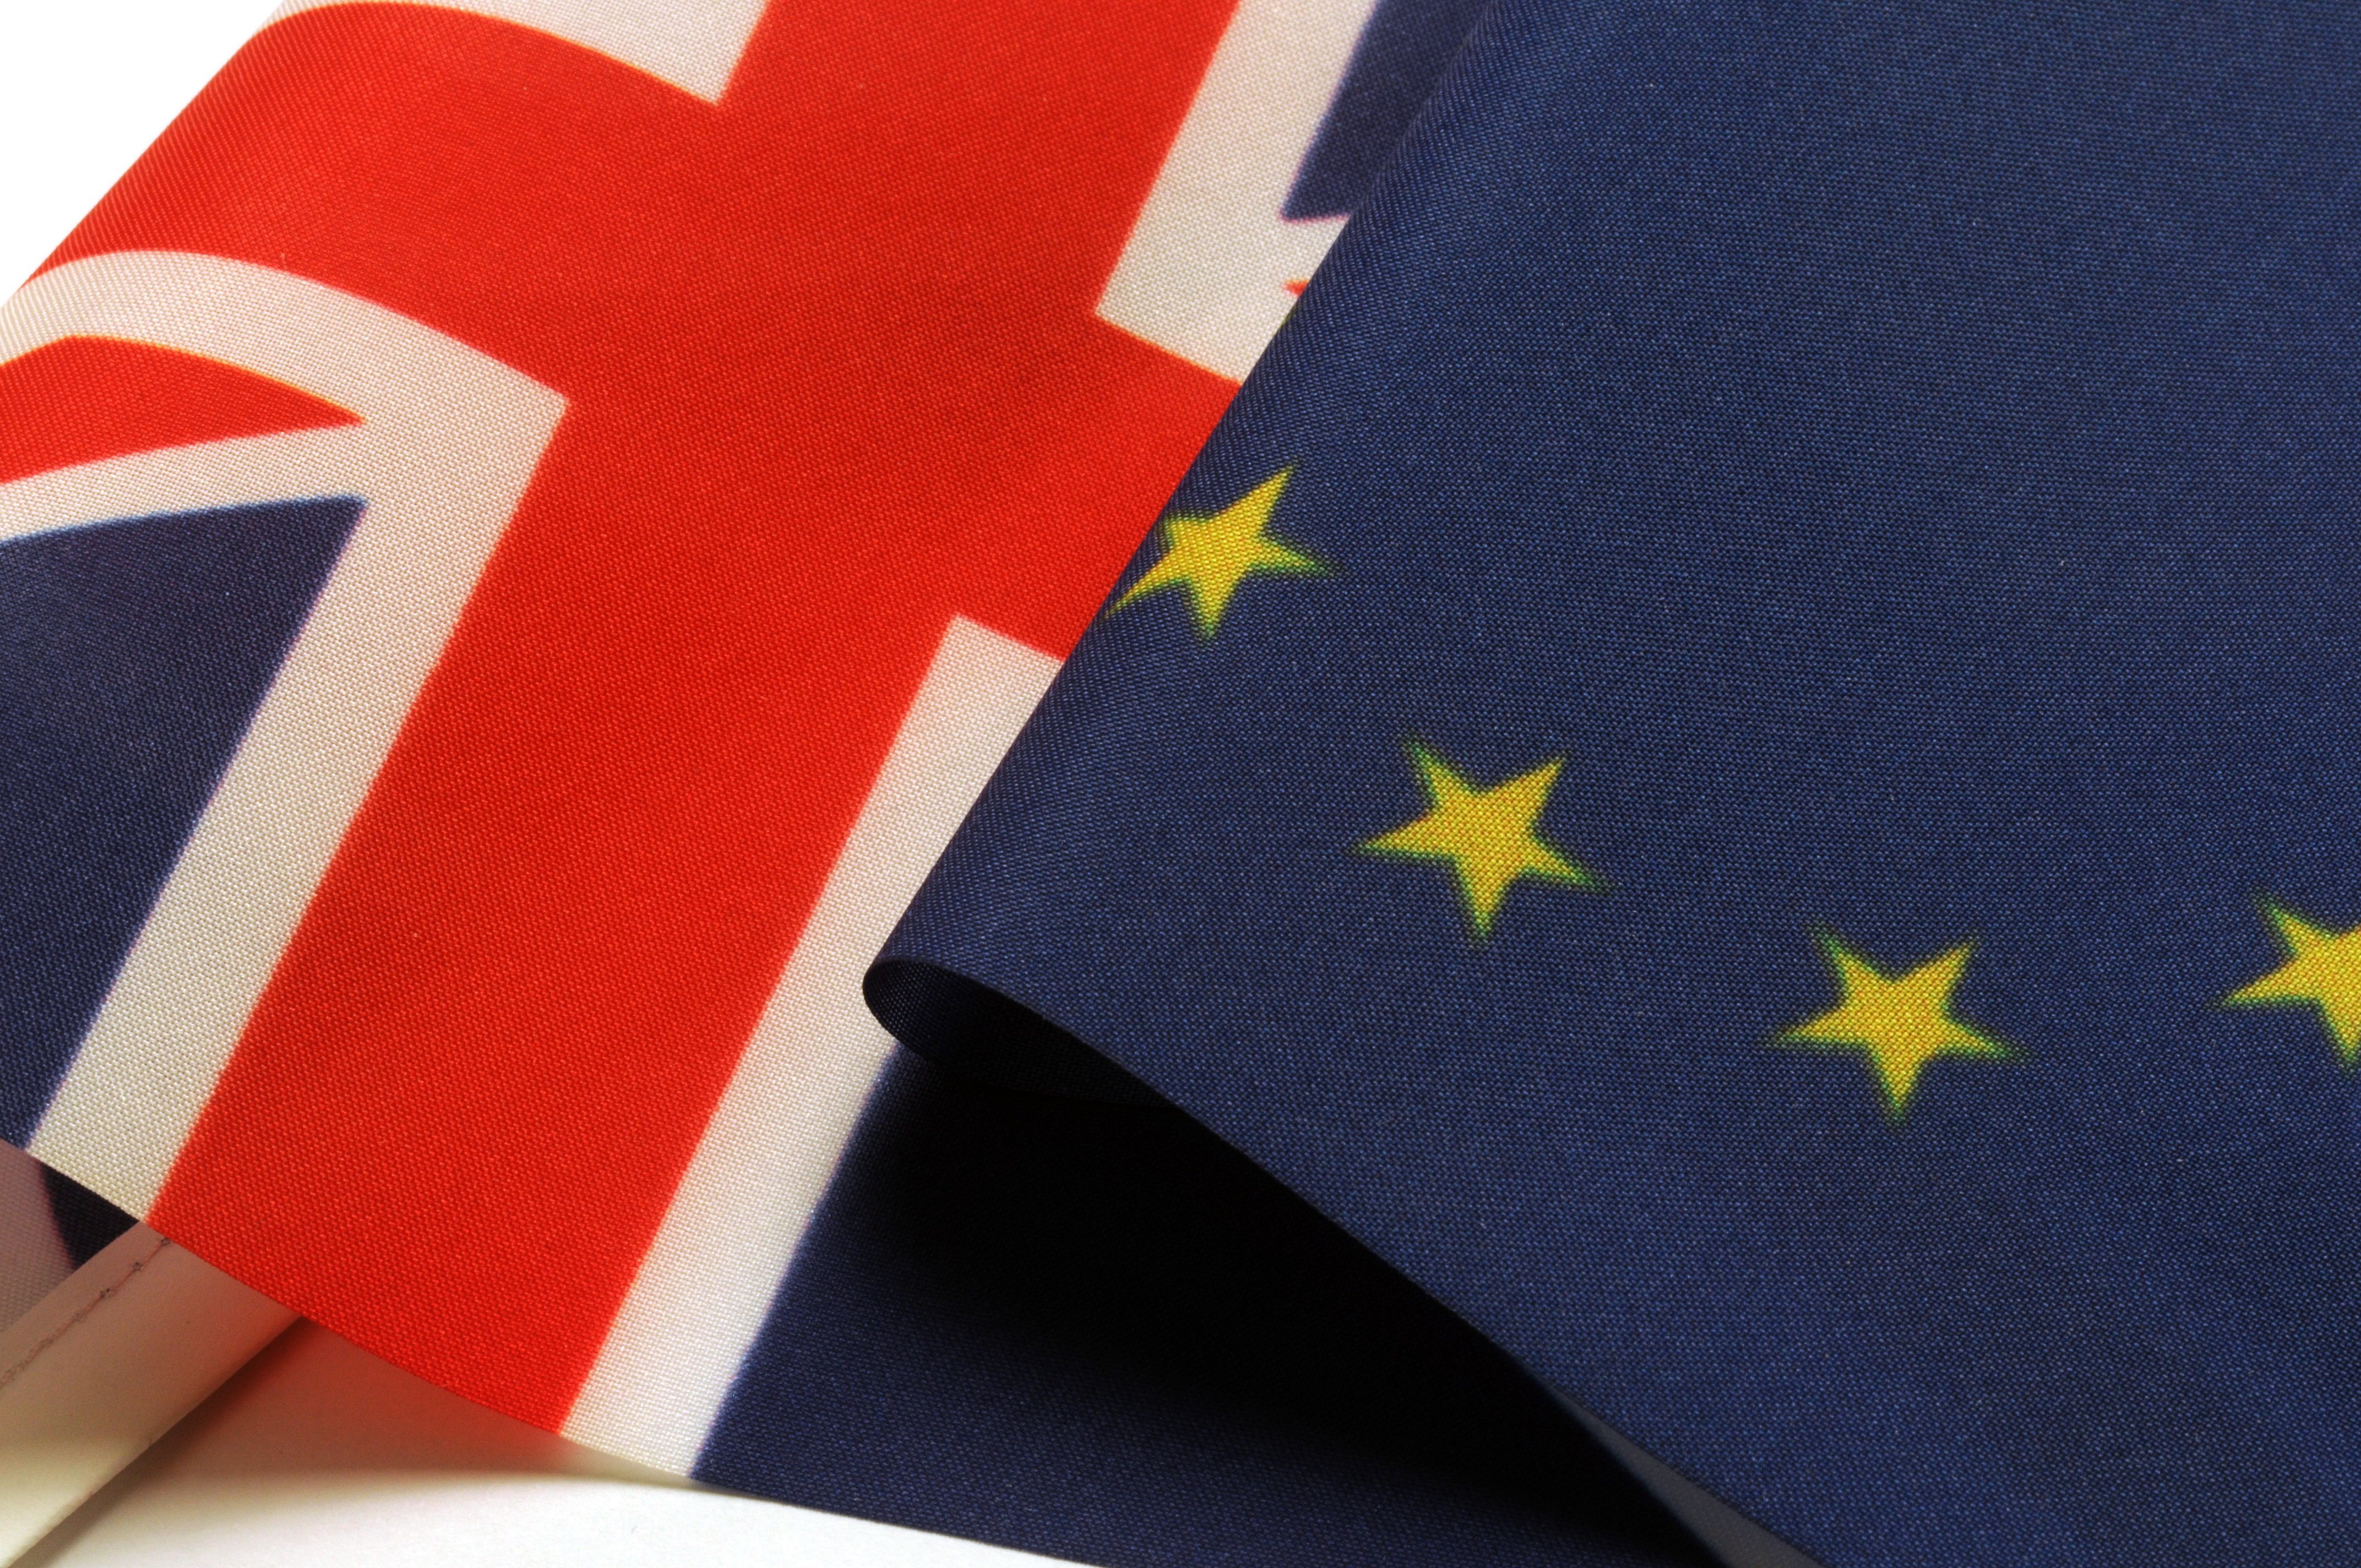 Accordo UE-Regno Unito sugli scambi commerciali